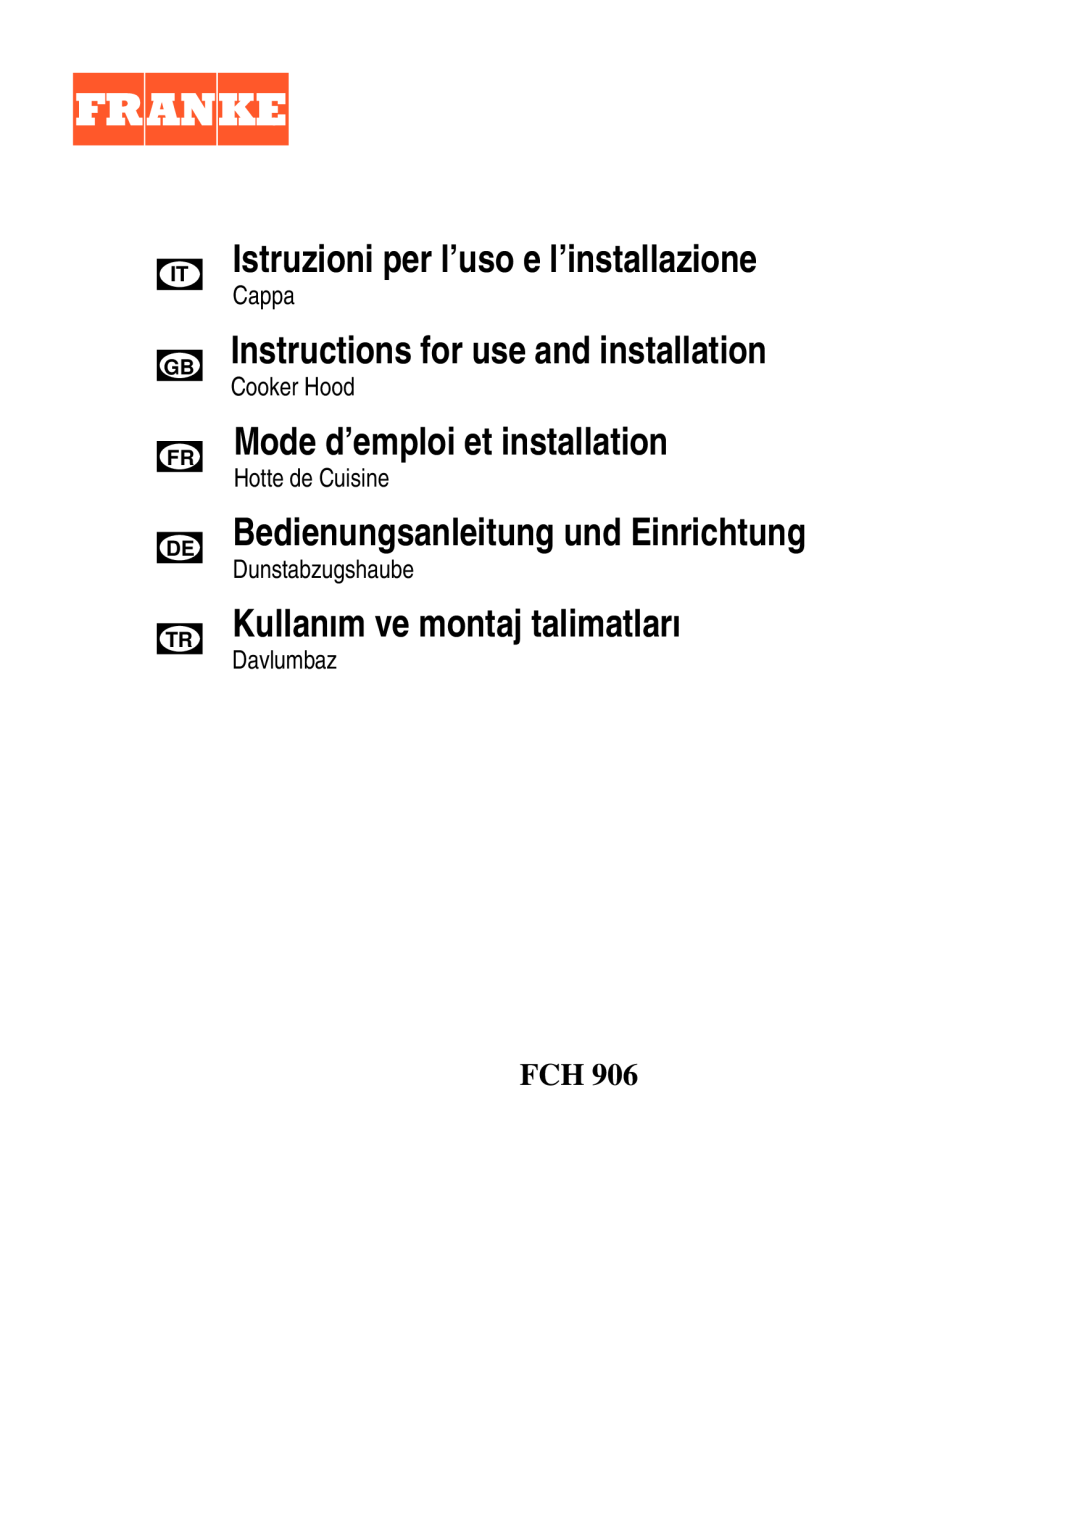 Franke Consumer Products FCH 906 manual Istruzioni per l’uso e l’installazione, Instructions for use and installation 